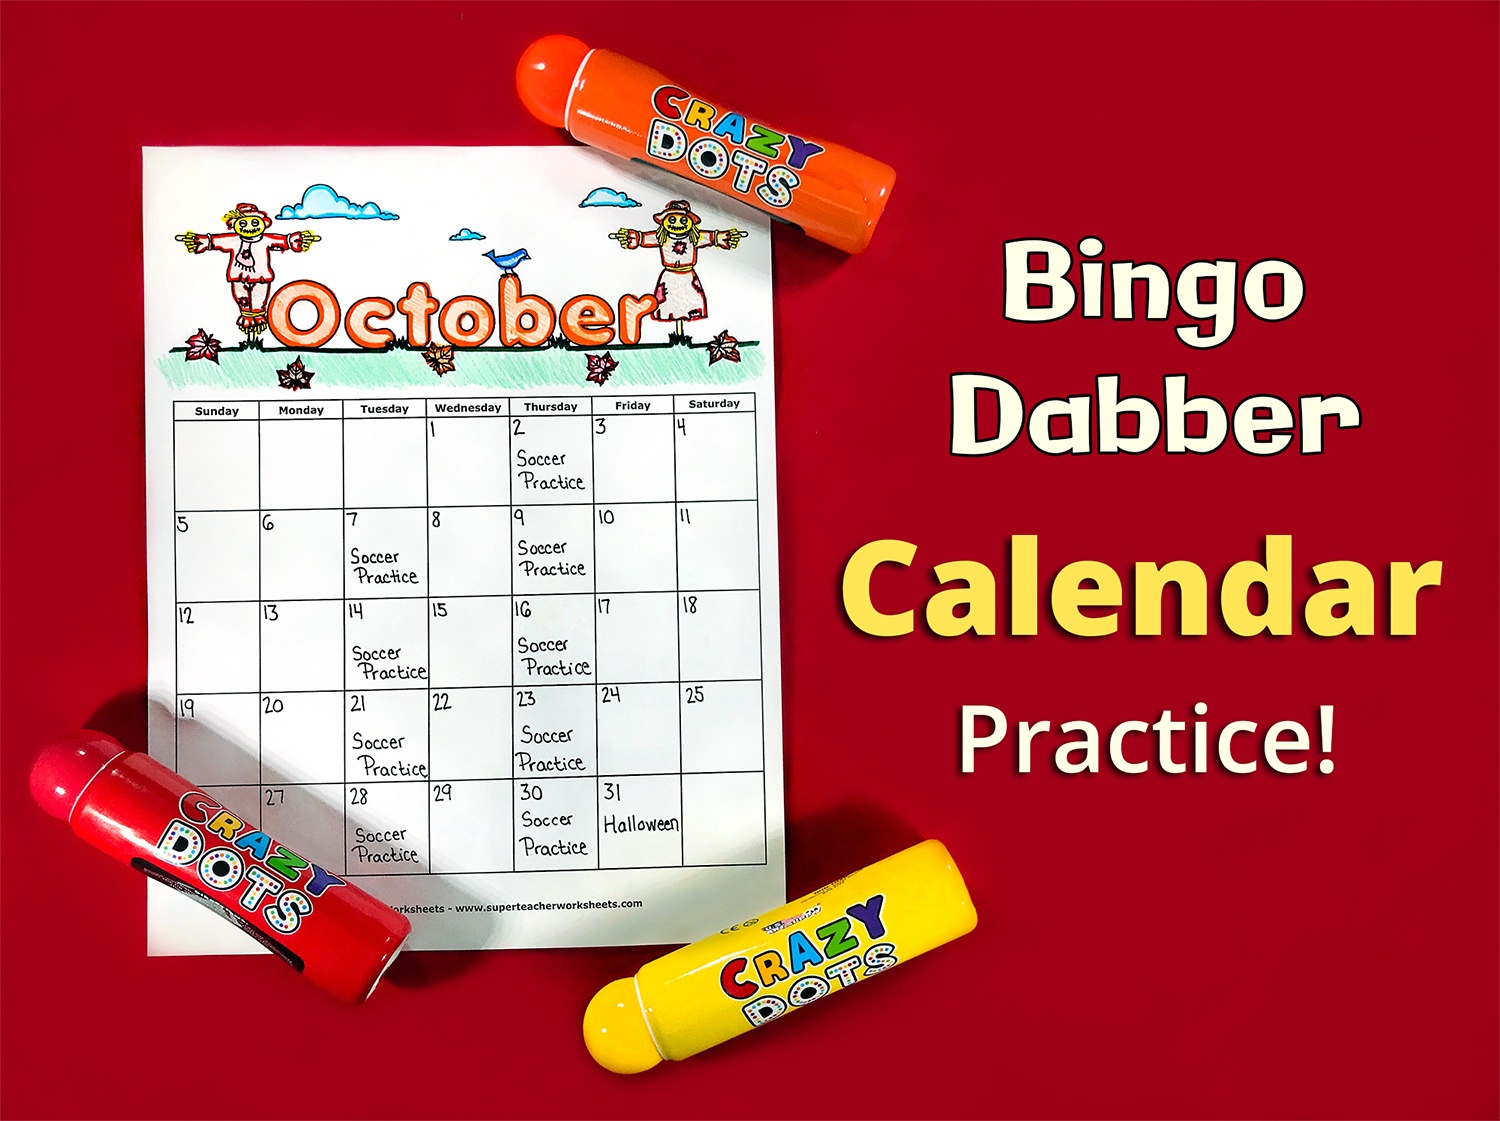 Use Bingo Dabbers to Practice Calendar Skills